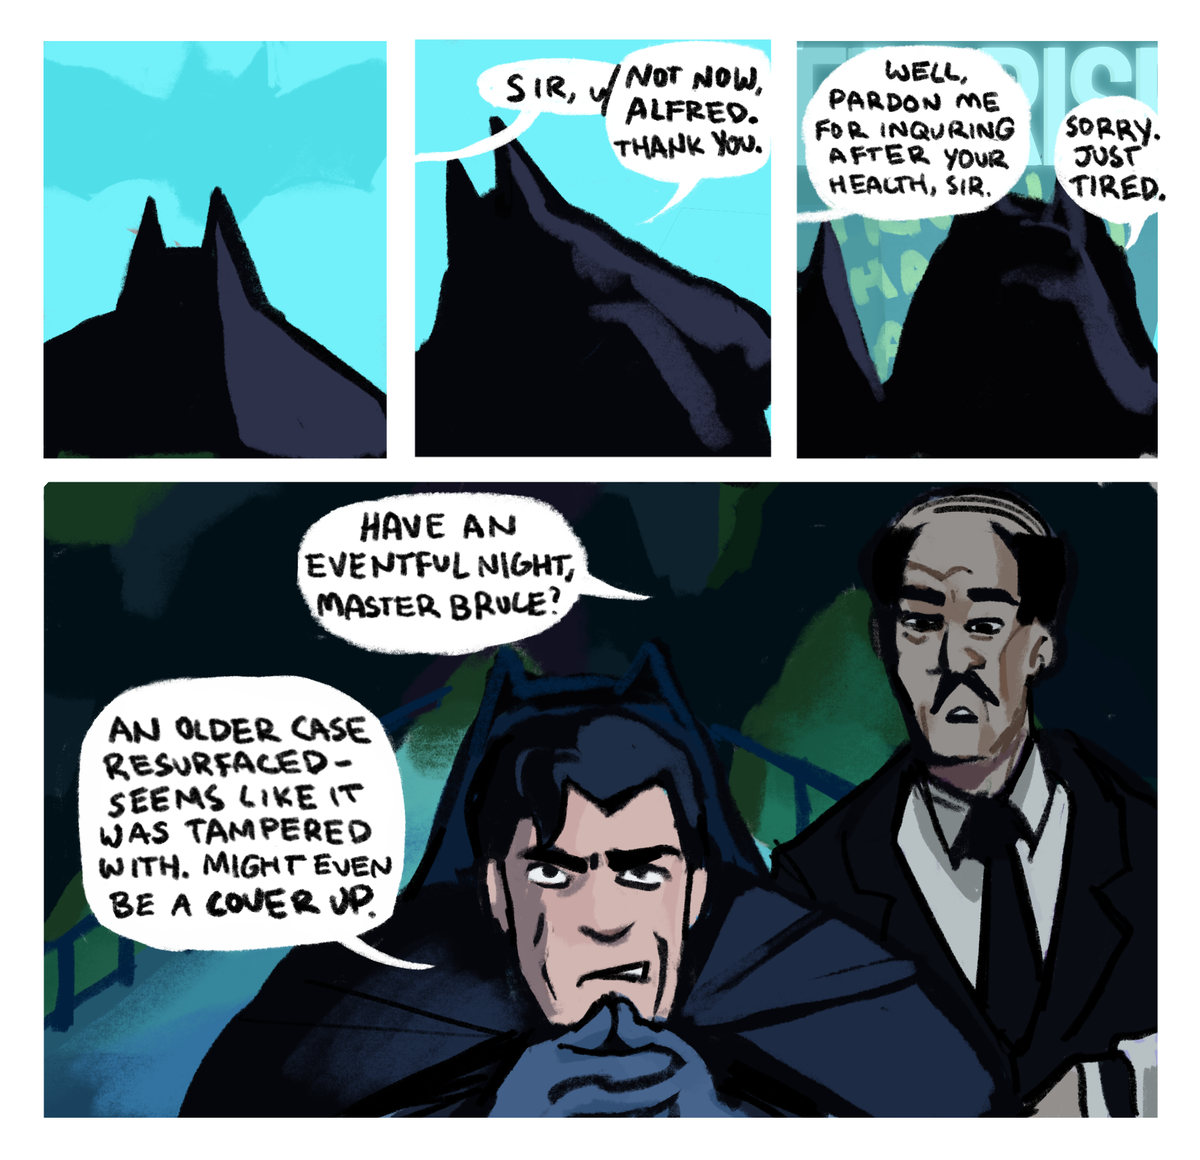 episode 2 of my batman oc comic, tattletale telltale
(1/2) 